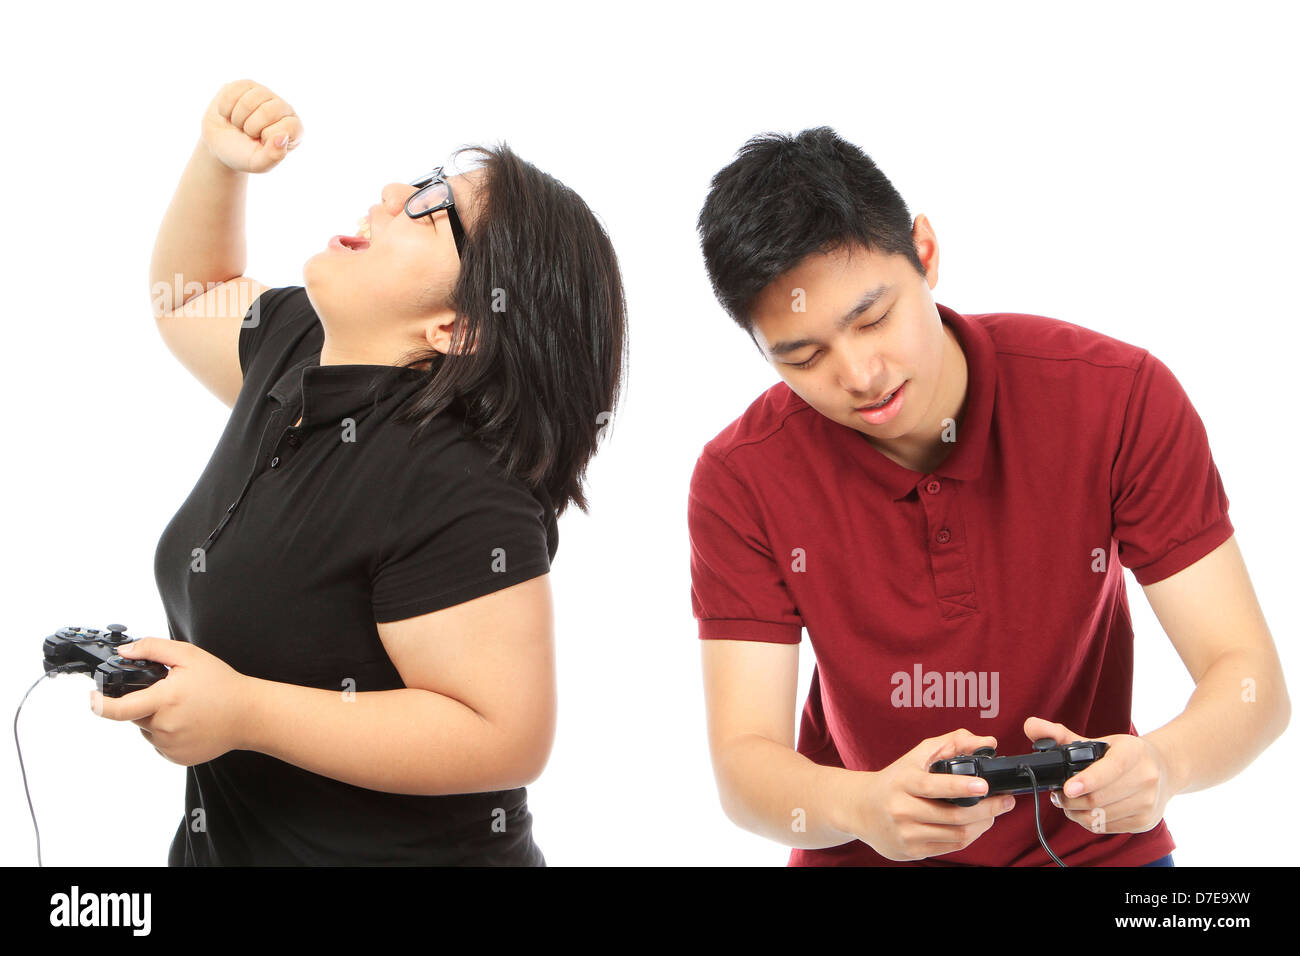 Jugendliche, die ein Videospiel kompetitiv spielen Stockfoto